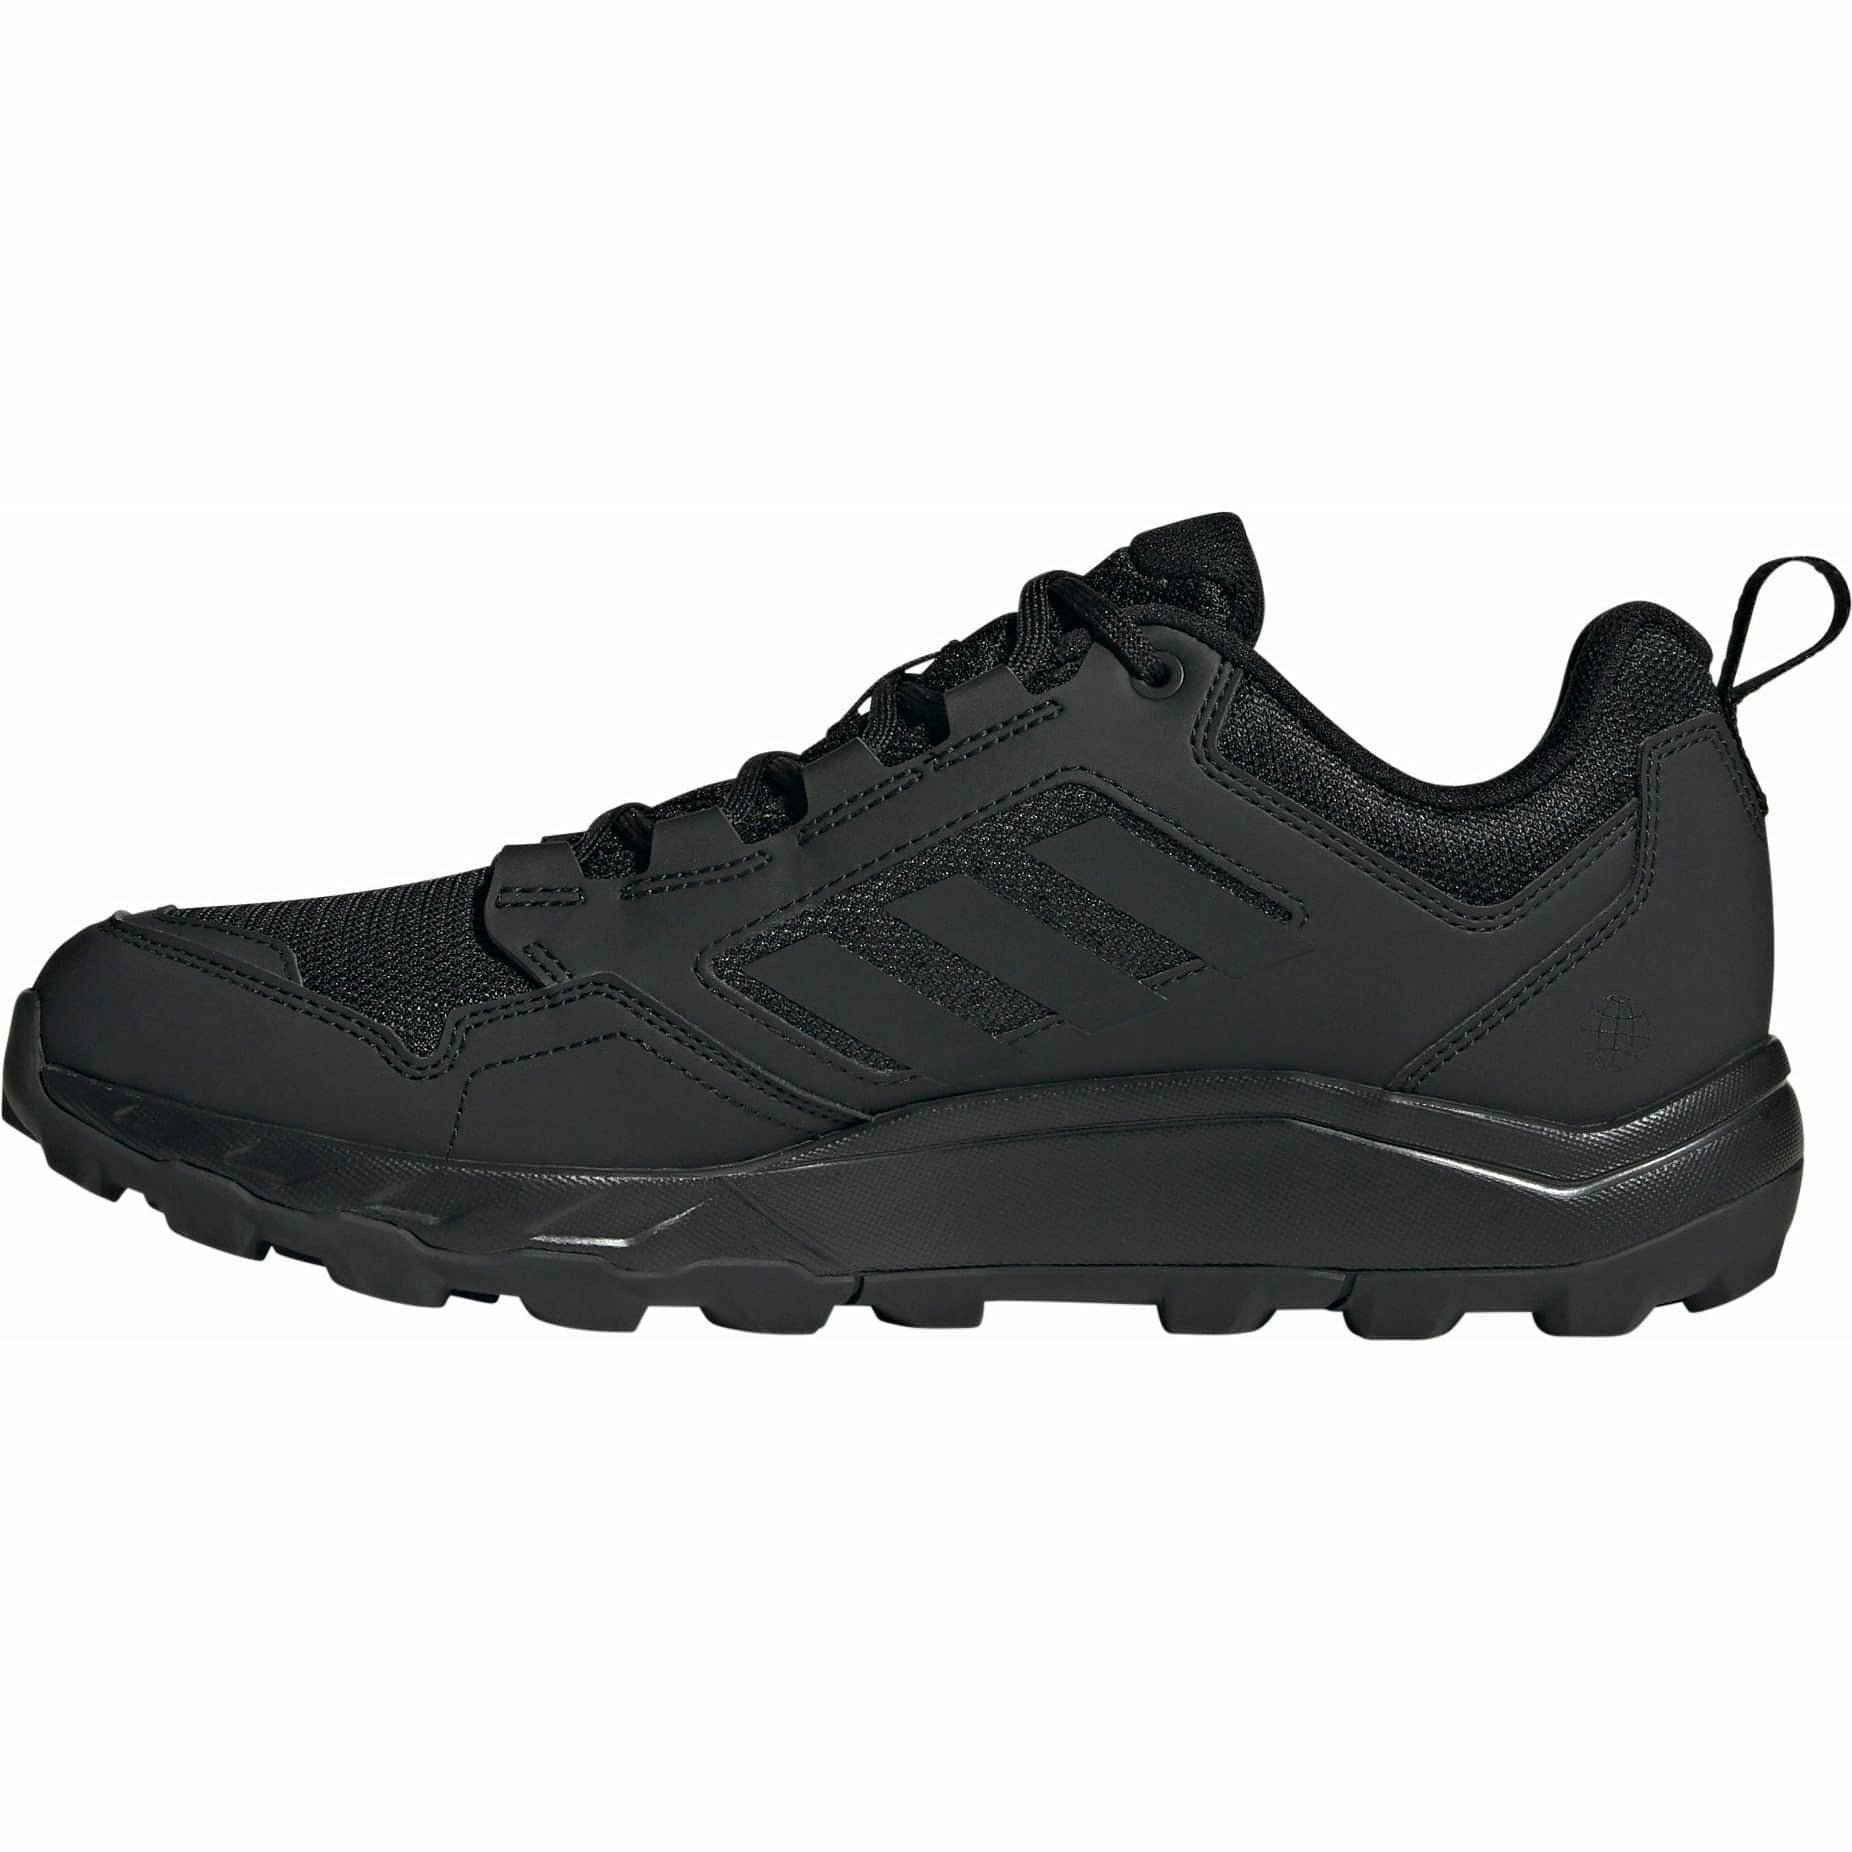 adidas Tracerocker 2 Mens Trail Running Shoes - Black